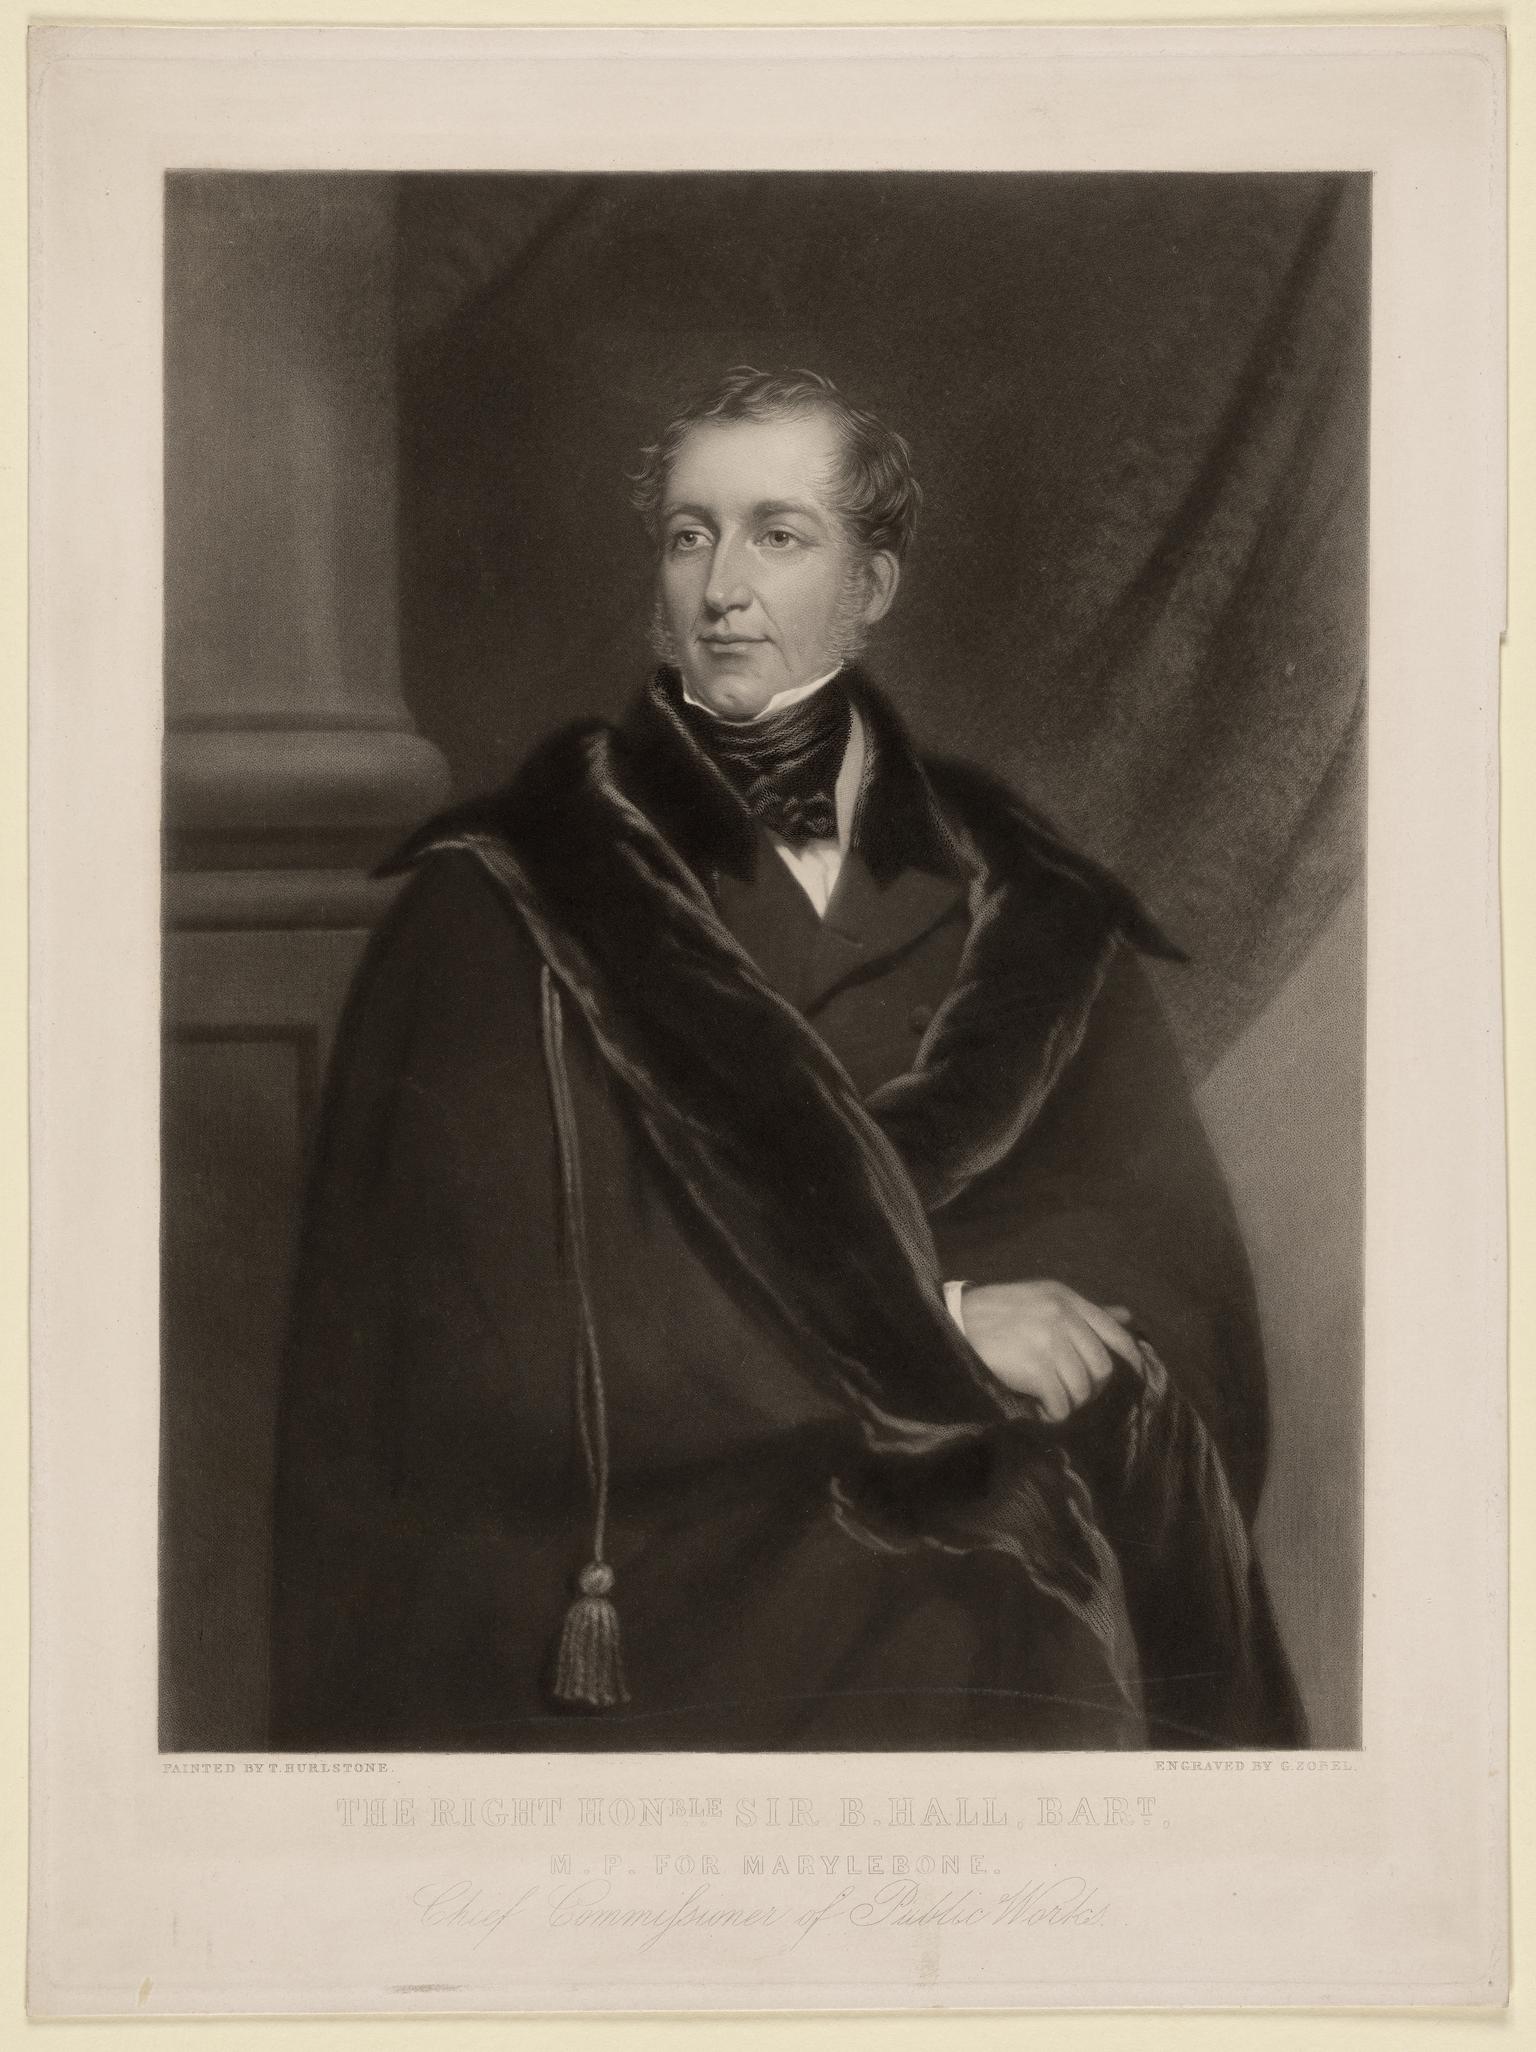 The Right Hon Sir B. Hall, Bart MP for Marylebone (1802 - 1867)